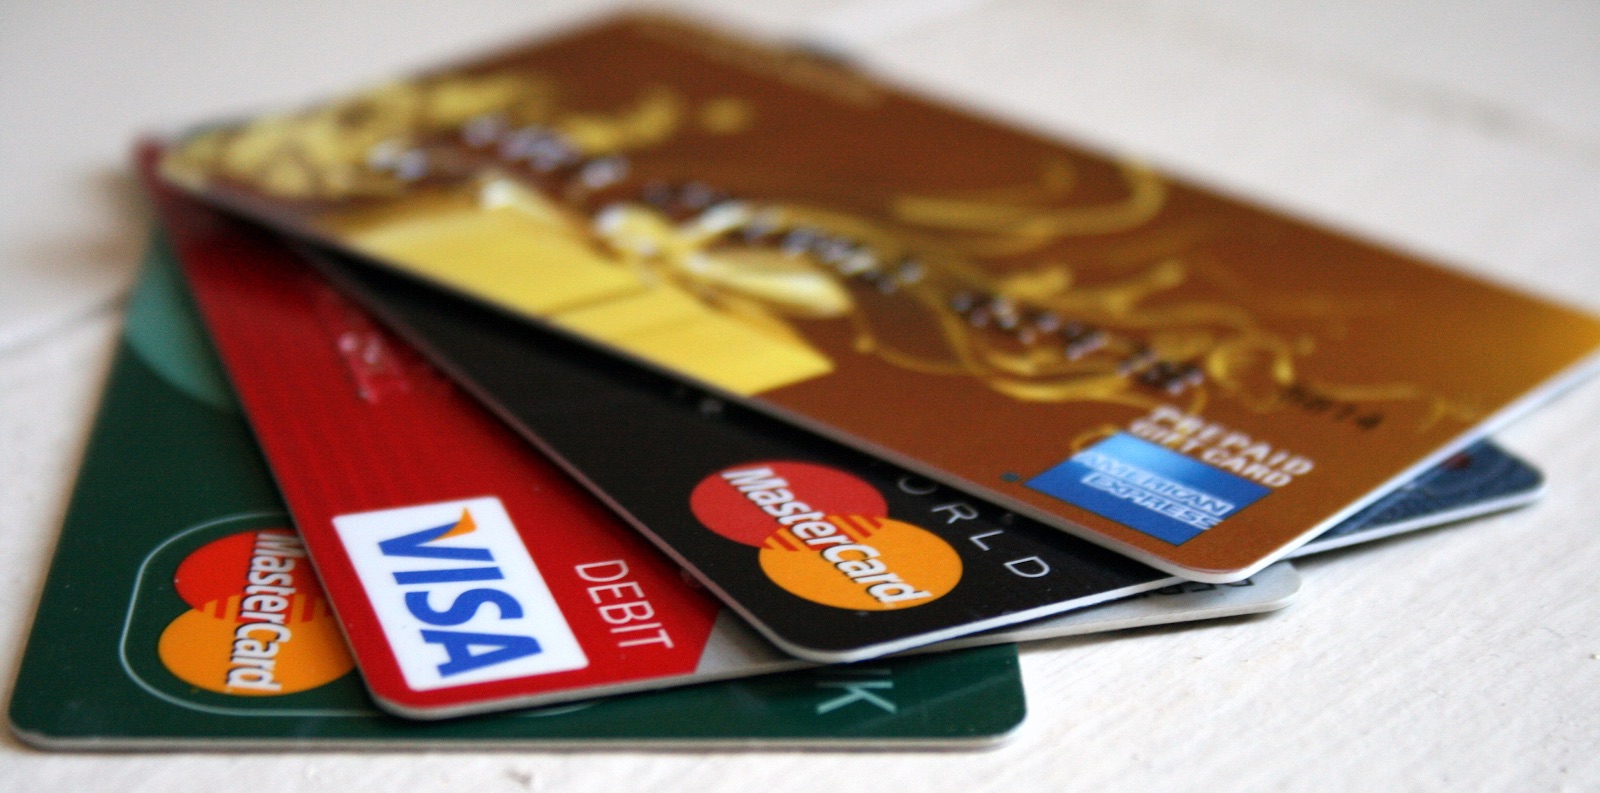 Hầu hết các ngân hàng đều có liên kết với hình thức rút tiền thẻ tín dụng của HTTL CREDIT.